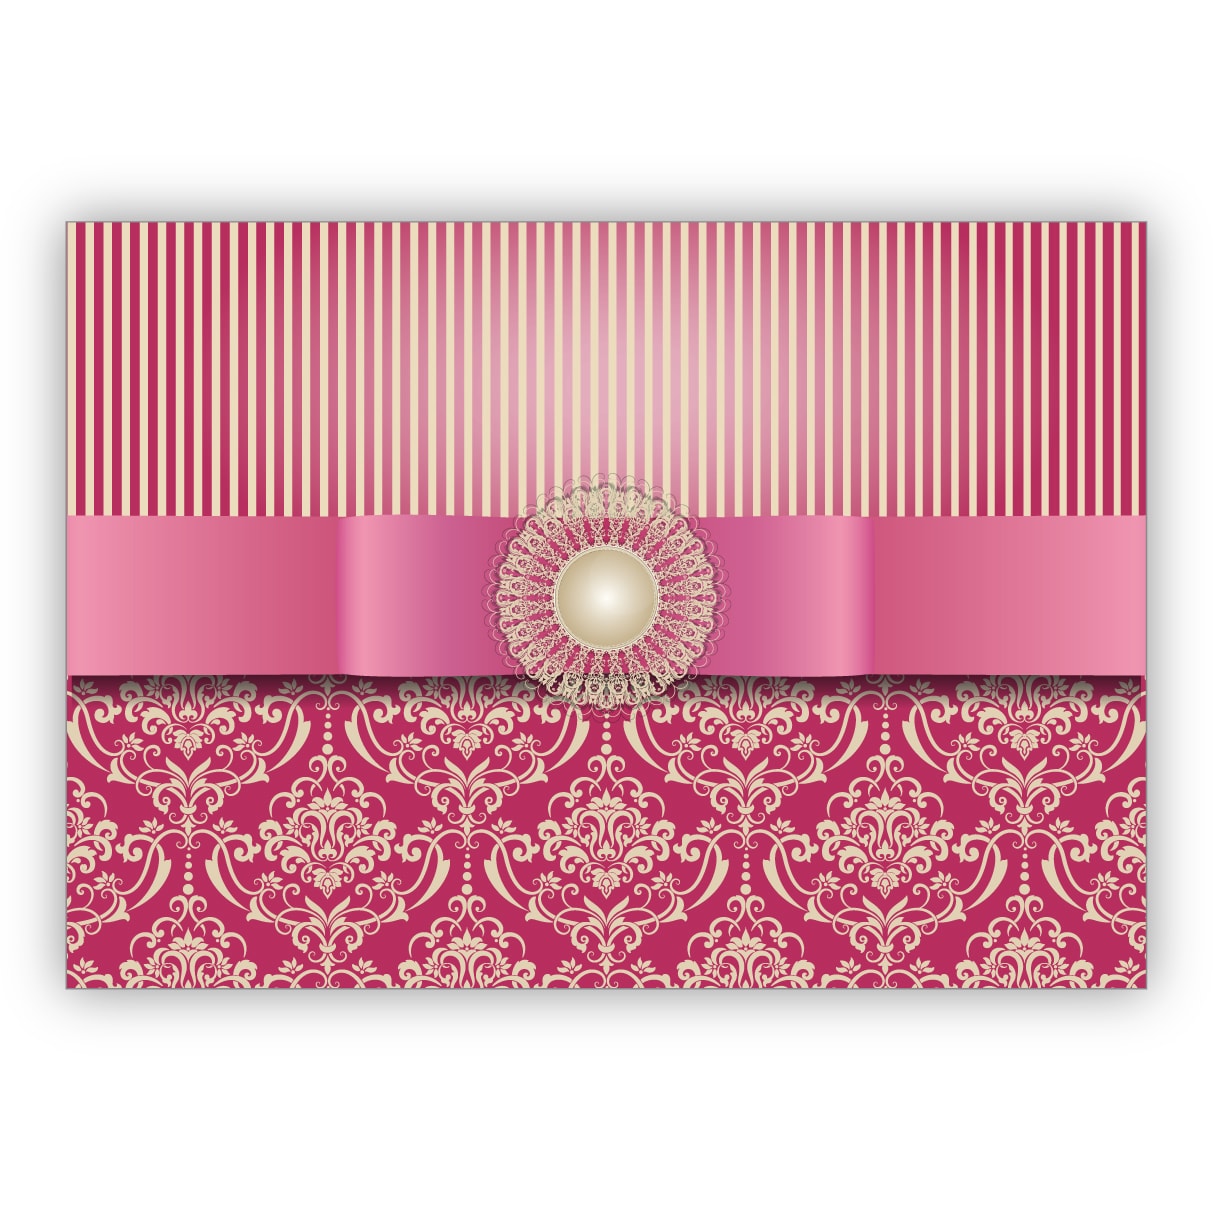 Vornehme Grußkarte im edlem Vintage Look mit Retro Damast Muster toll als Glückwunsch oder Einladung, rosa